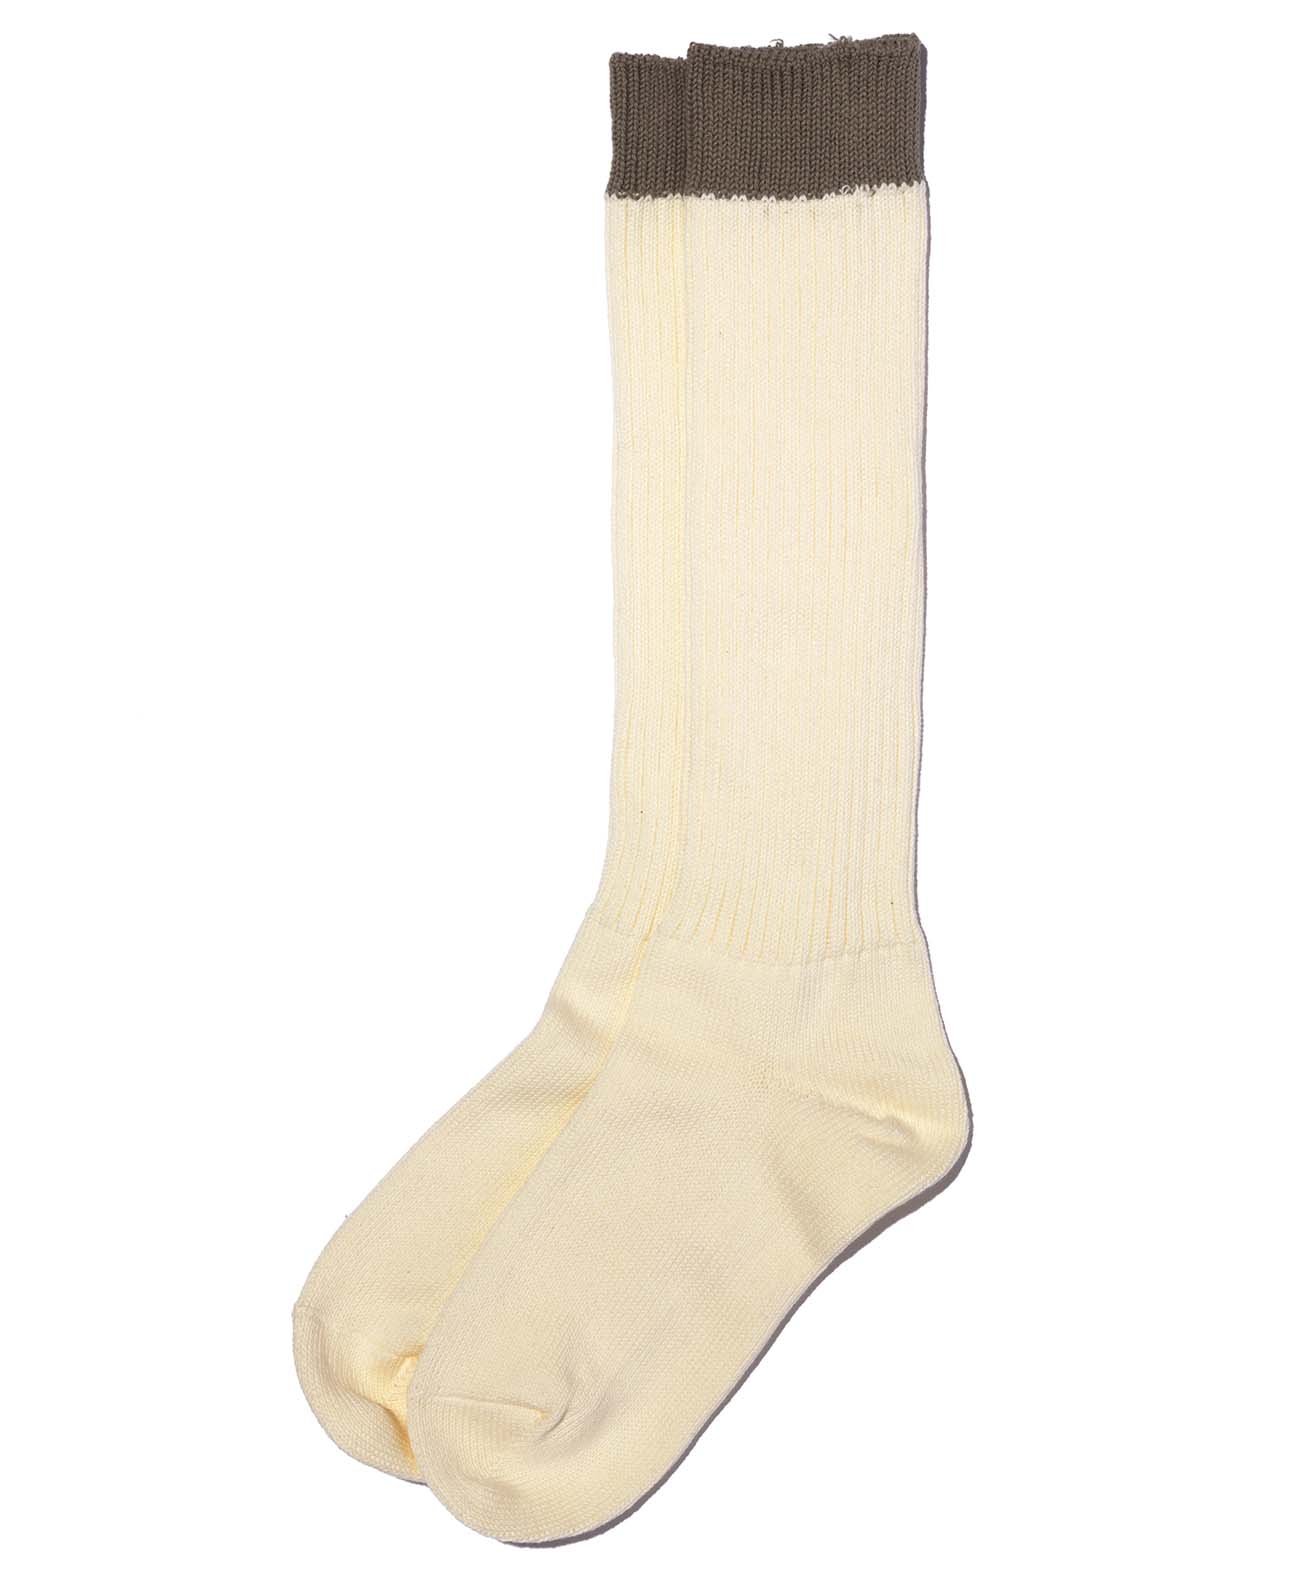 Stiefel Socken / Elfenbein / Grau